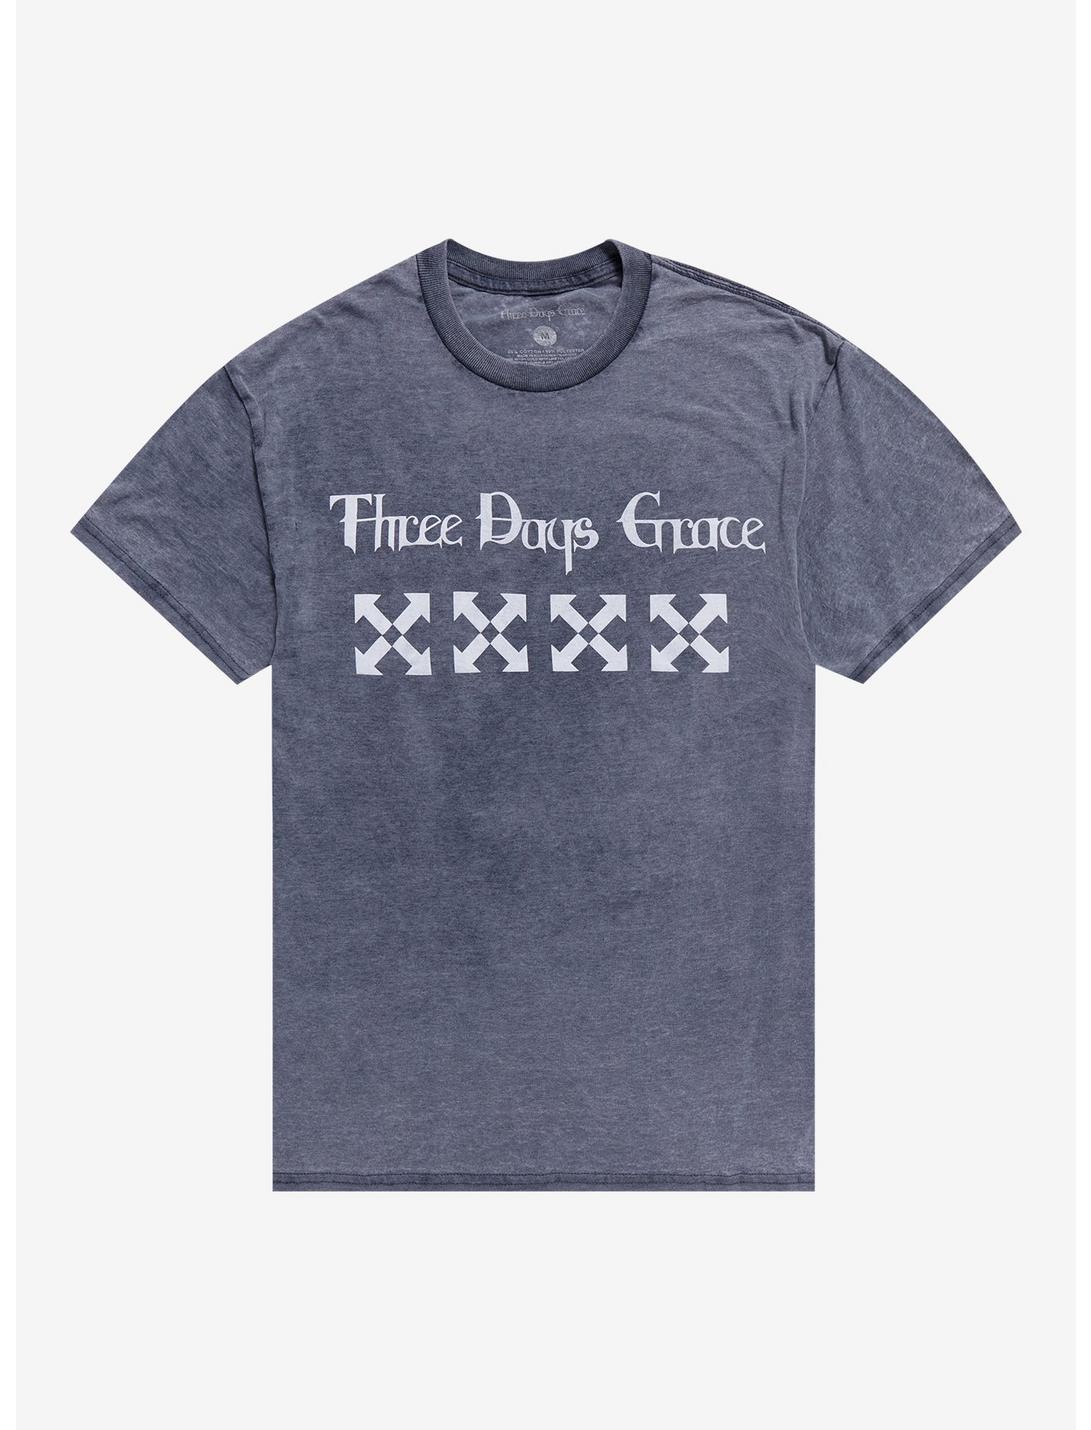 Three Days Grace Arrows Boyfriend Fit Girls T-Shirt, GREY, hi-res